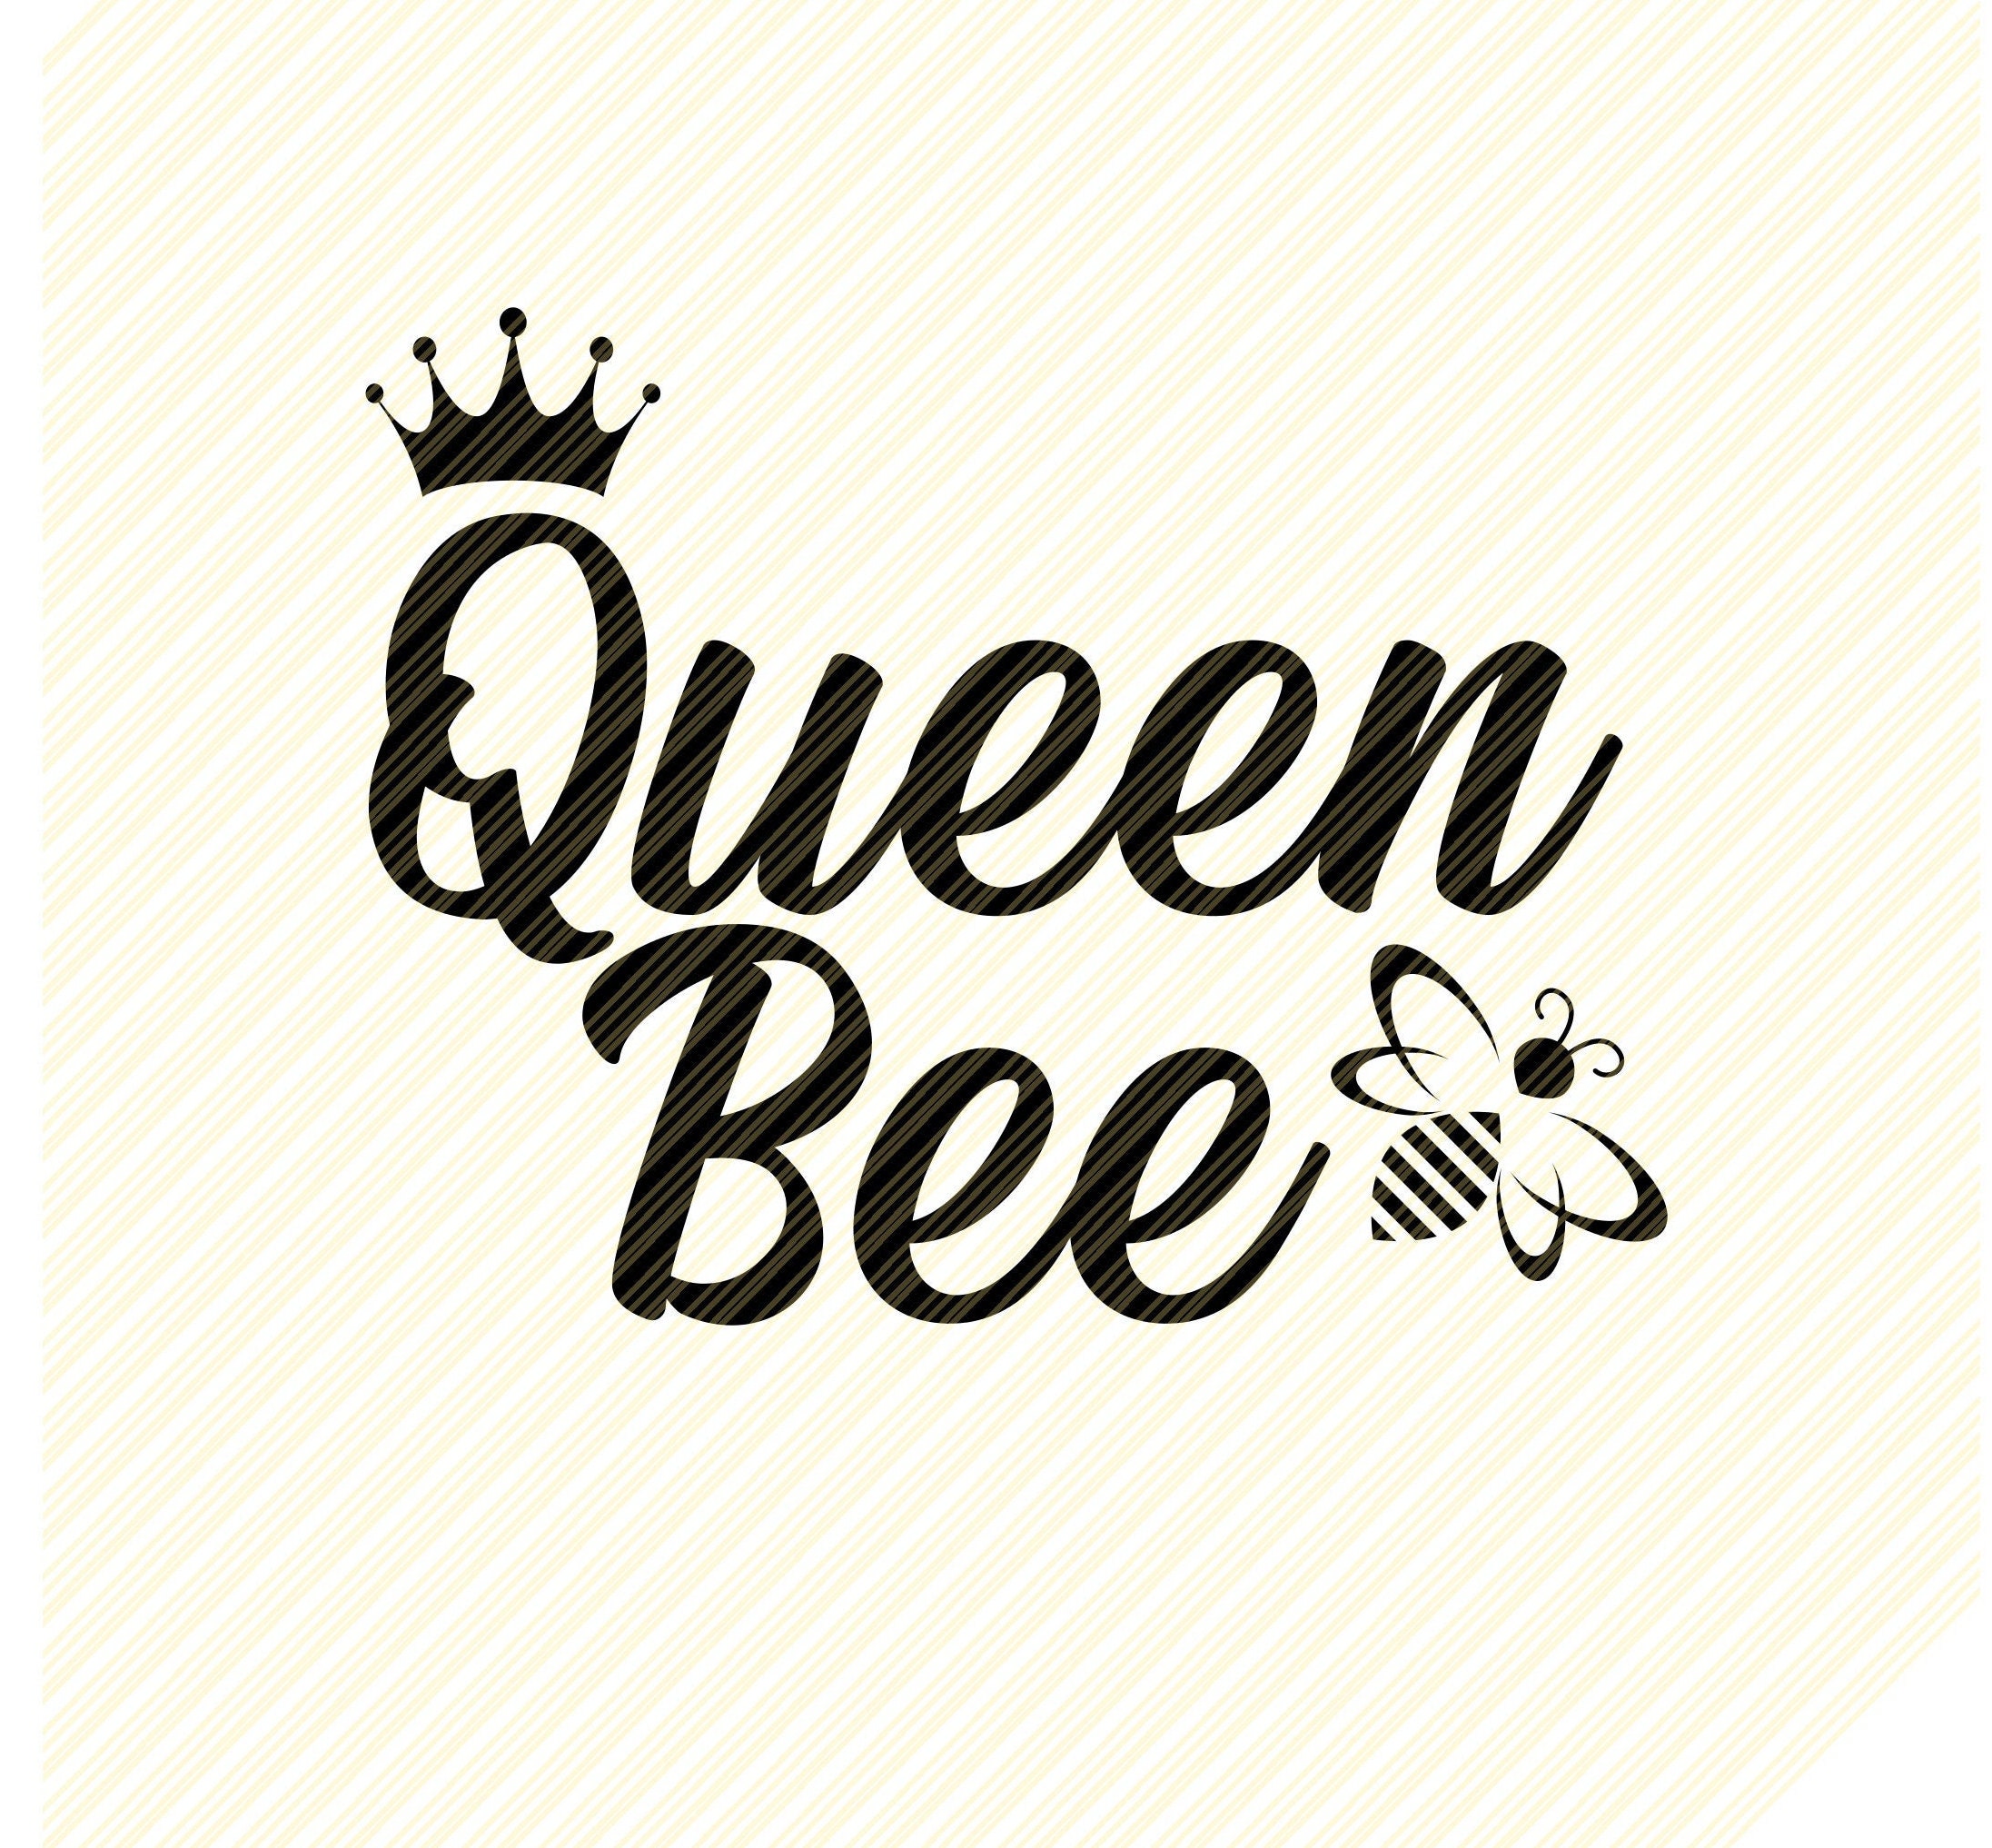 Download Queen bee svg Queen bee quotes bee svgboss svgbee | Etsy